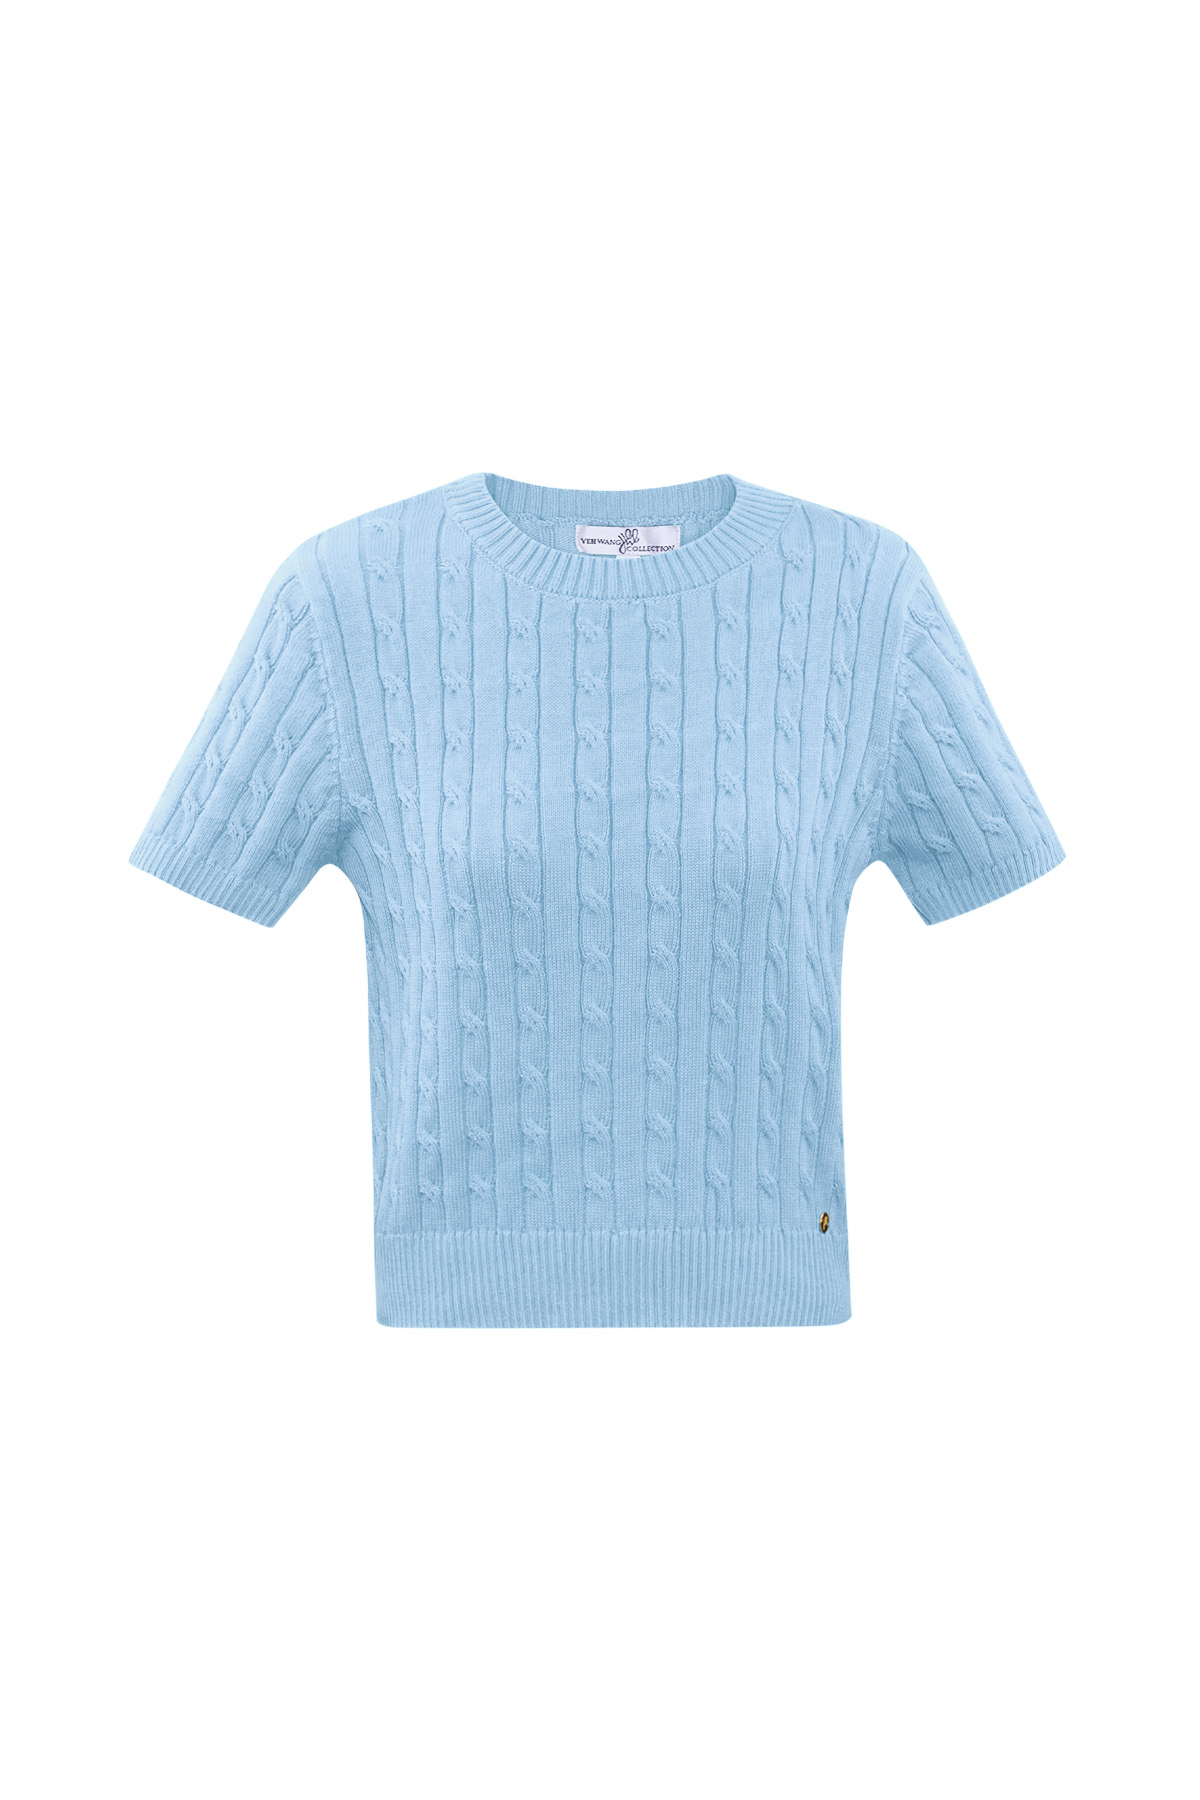 Pull tricoté à torsades et manches courtes large/extra large – bleu clair